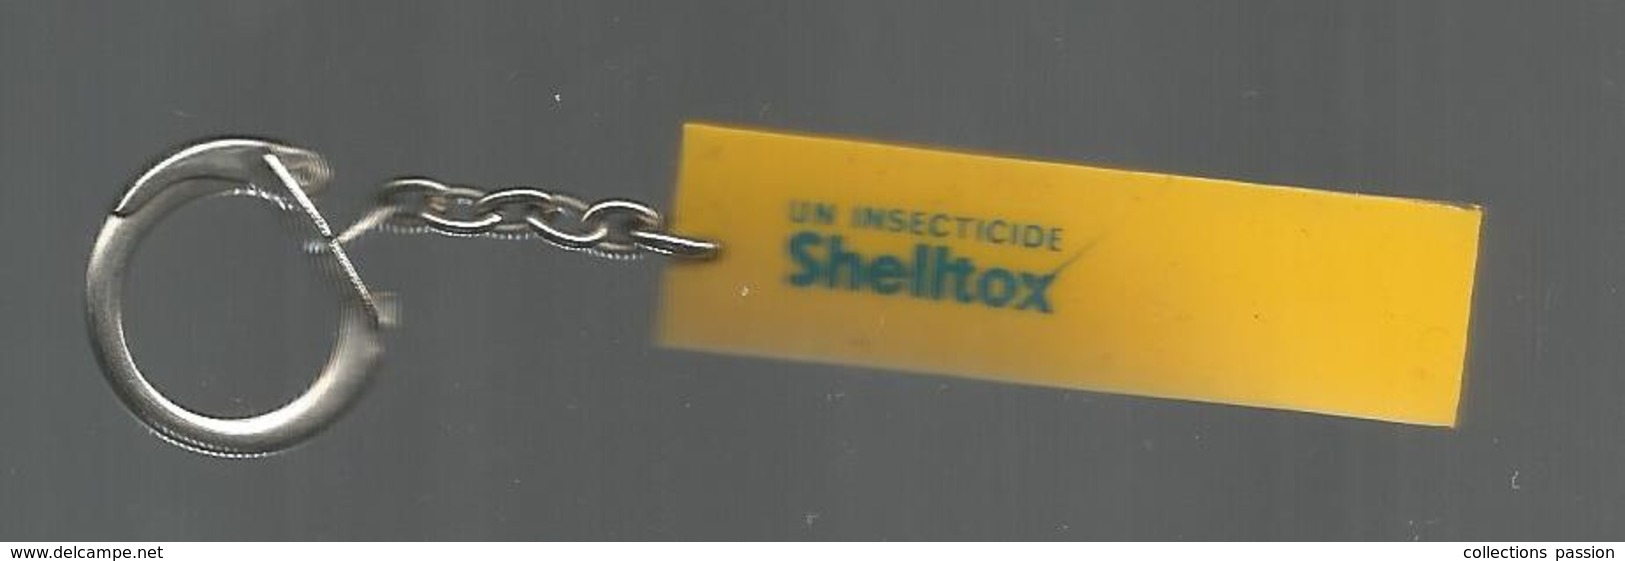 Porte Clefs ,clés, Plaquette VAPONA ,  Un Insecticide SHELLTOX , 2 Scans ,  Frais Fr 1.95 E - Porte-clefs